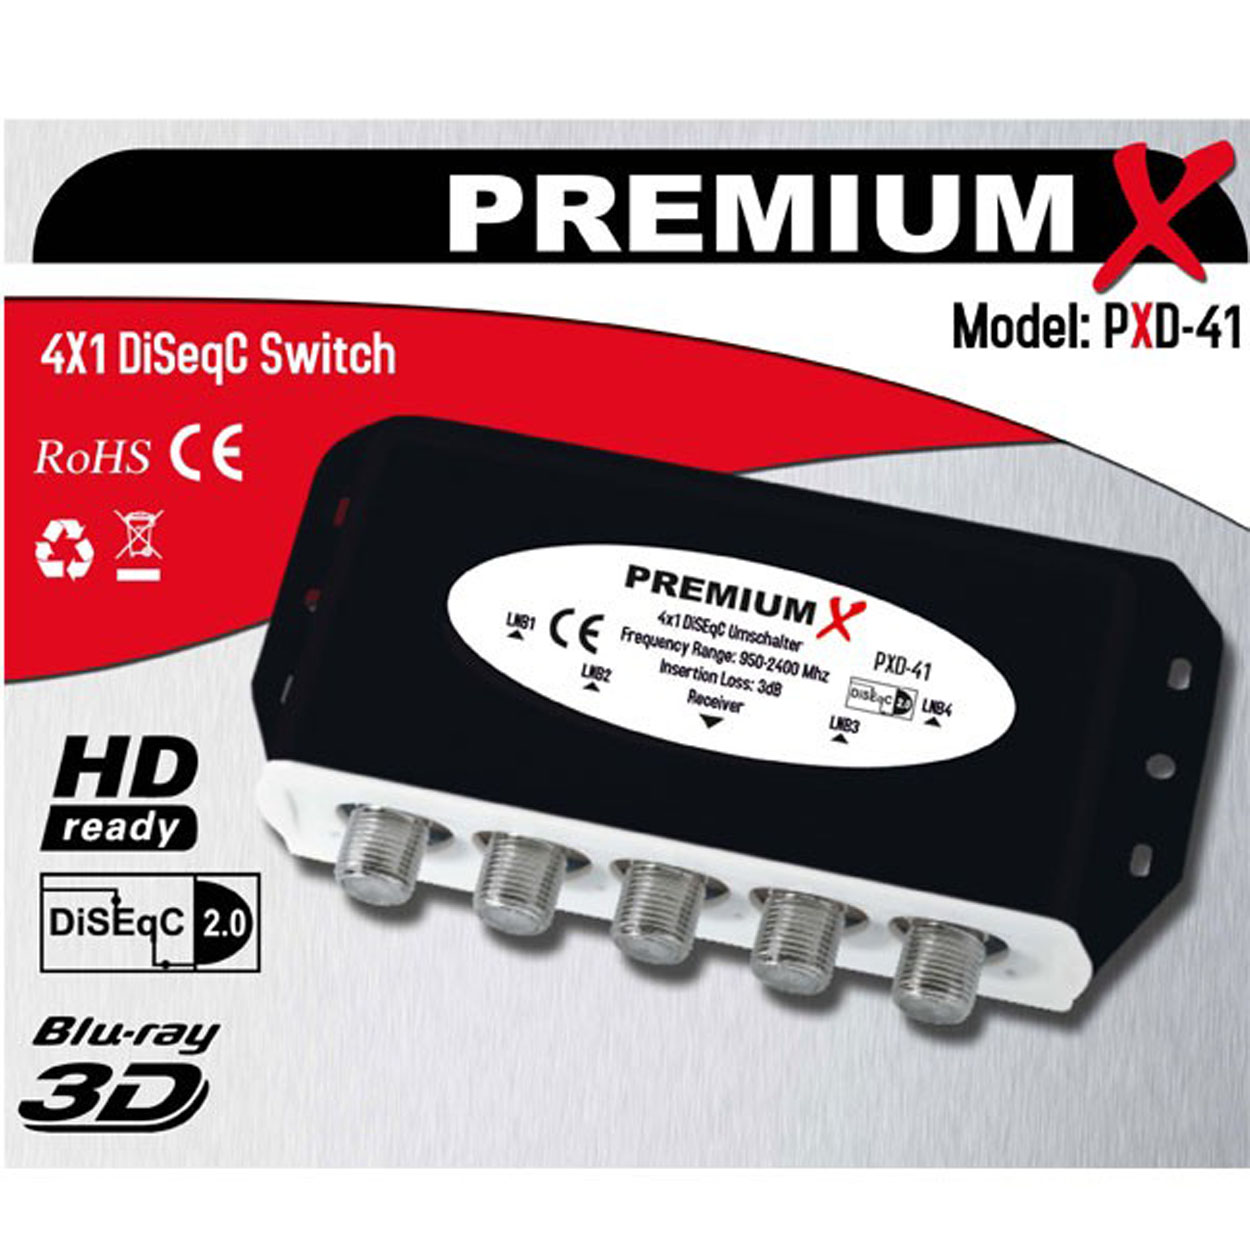 2.0 PREMIUMX Umschalter 4/1 HDTV DVB-S2 Sat-Multischalter Switch DiseqC 4K Schalter PXD-41 SAT 4x Wetterschutzgehäuse FullHD